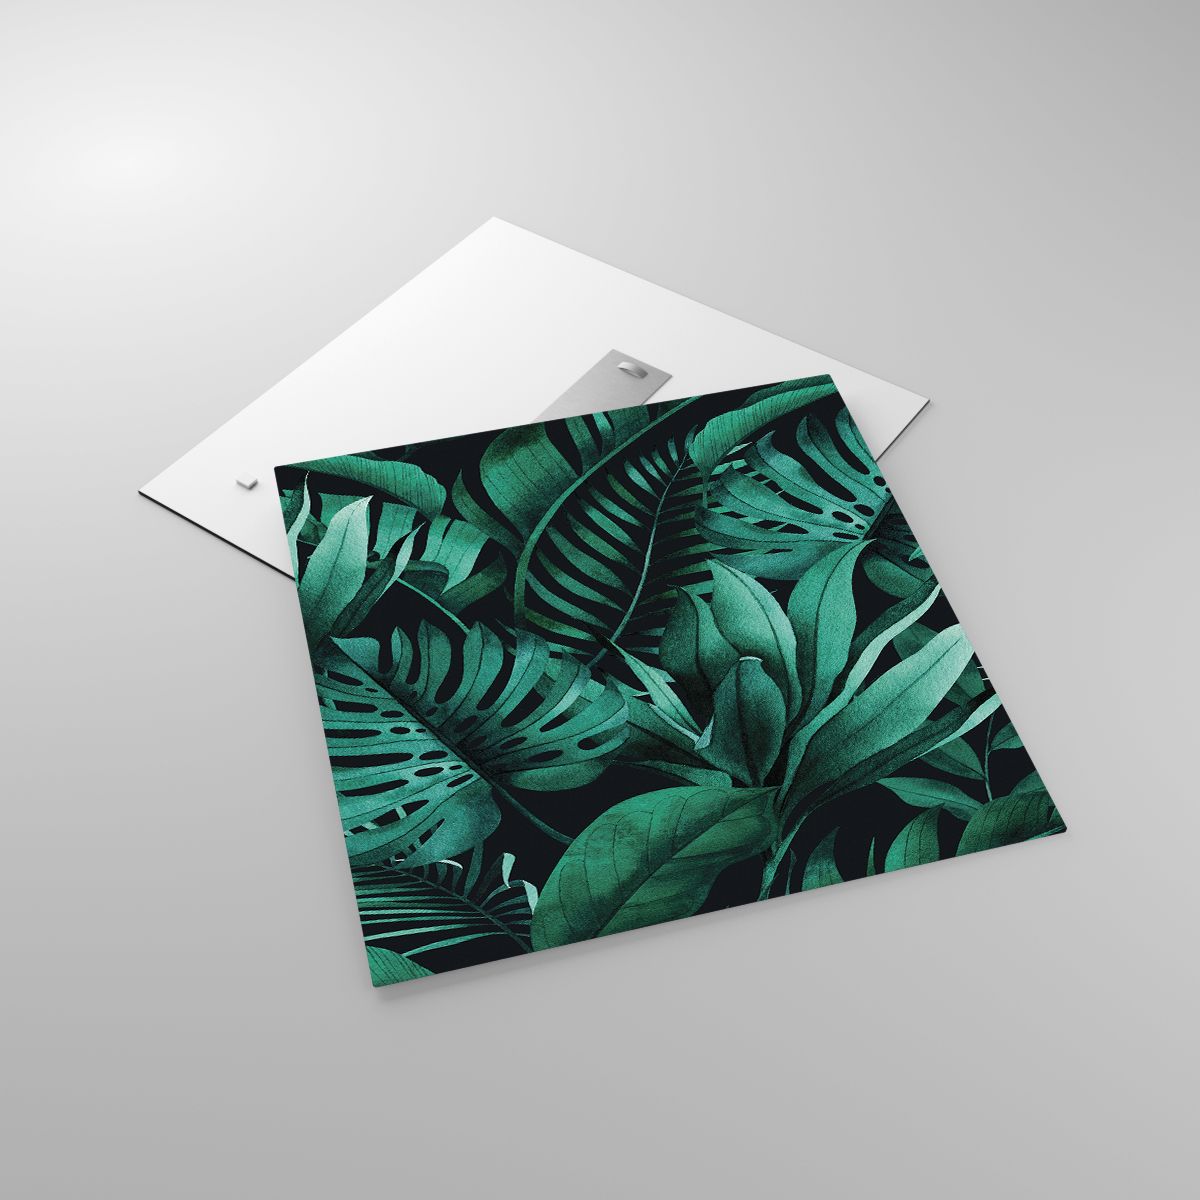 Glasbild Exotische Pflanze, Glasbild Palmblatt, Glasbild Monstera-Blatt, Glasbild Natur, Glasbild Tropen